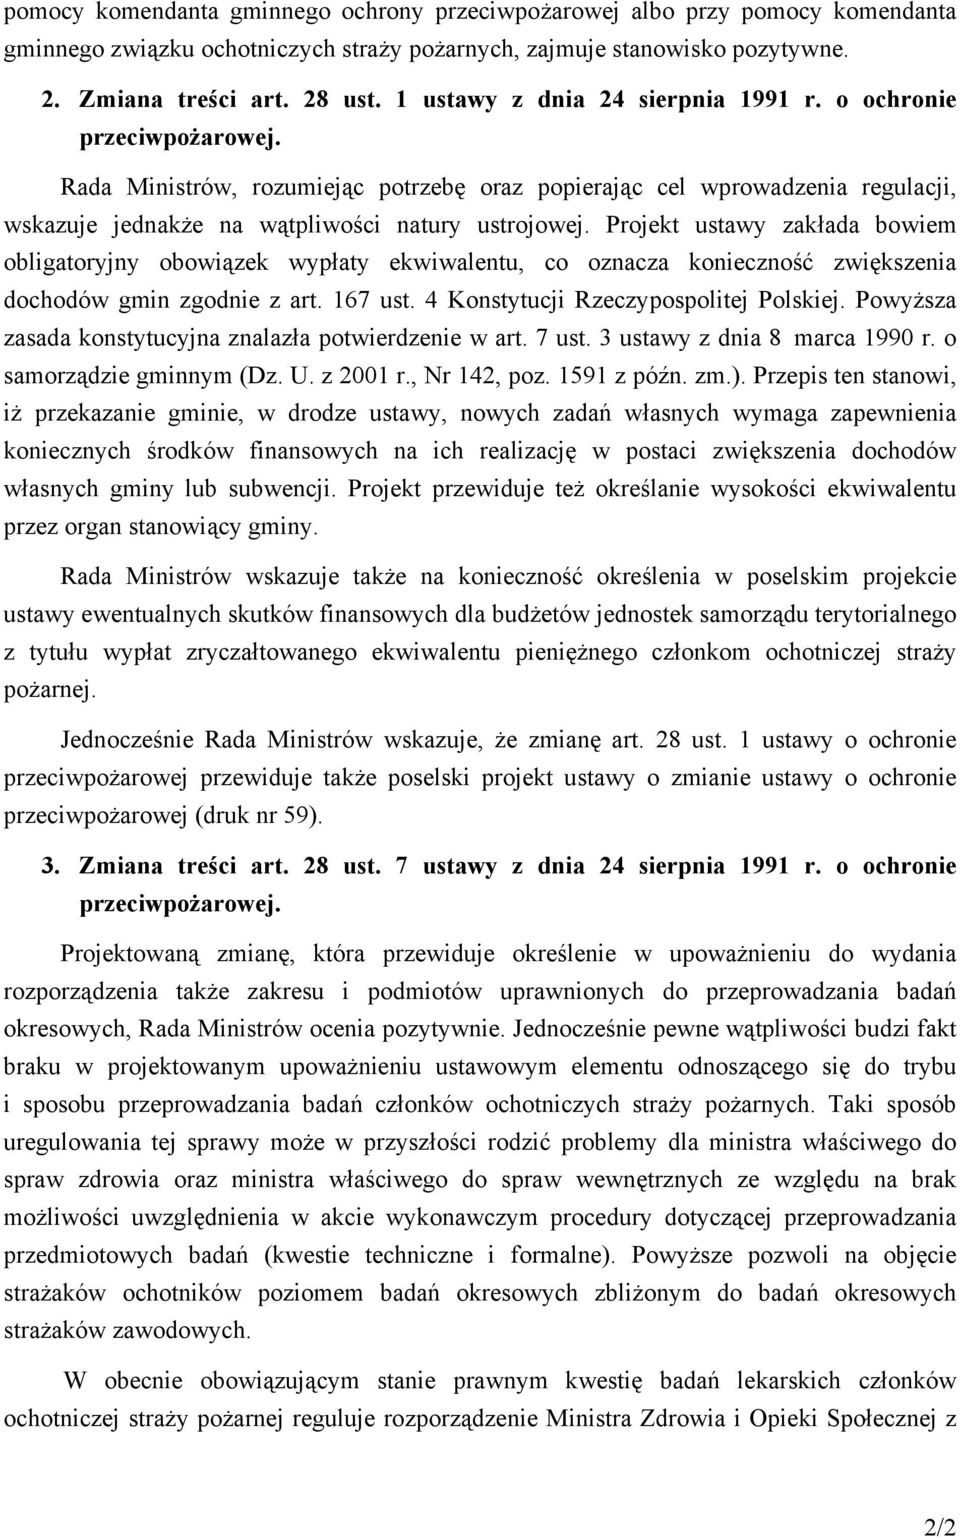 Projekt ustawy zakłada bowiem obligatoryjny obowiązek wypłaty ekwiwalentu, co oznacza konieczność zwiększenia dochodów gmin zgodnie z art. 167 ust. 4 Konstytucji Rzeczypospolitej Polskiej.